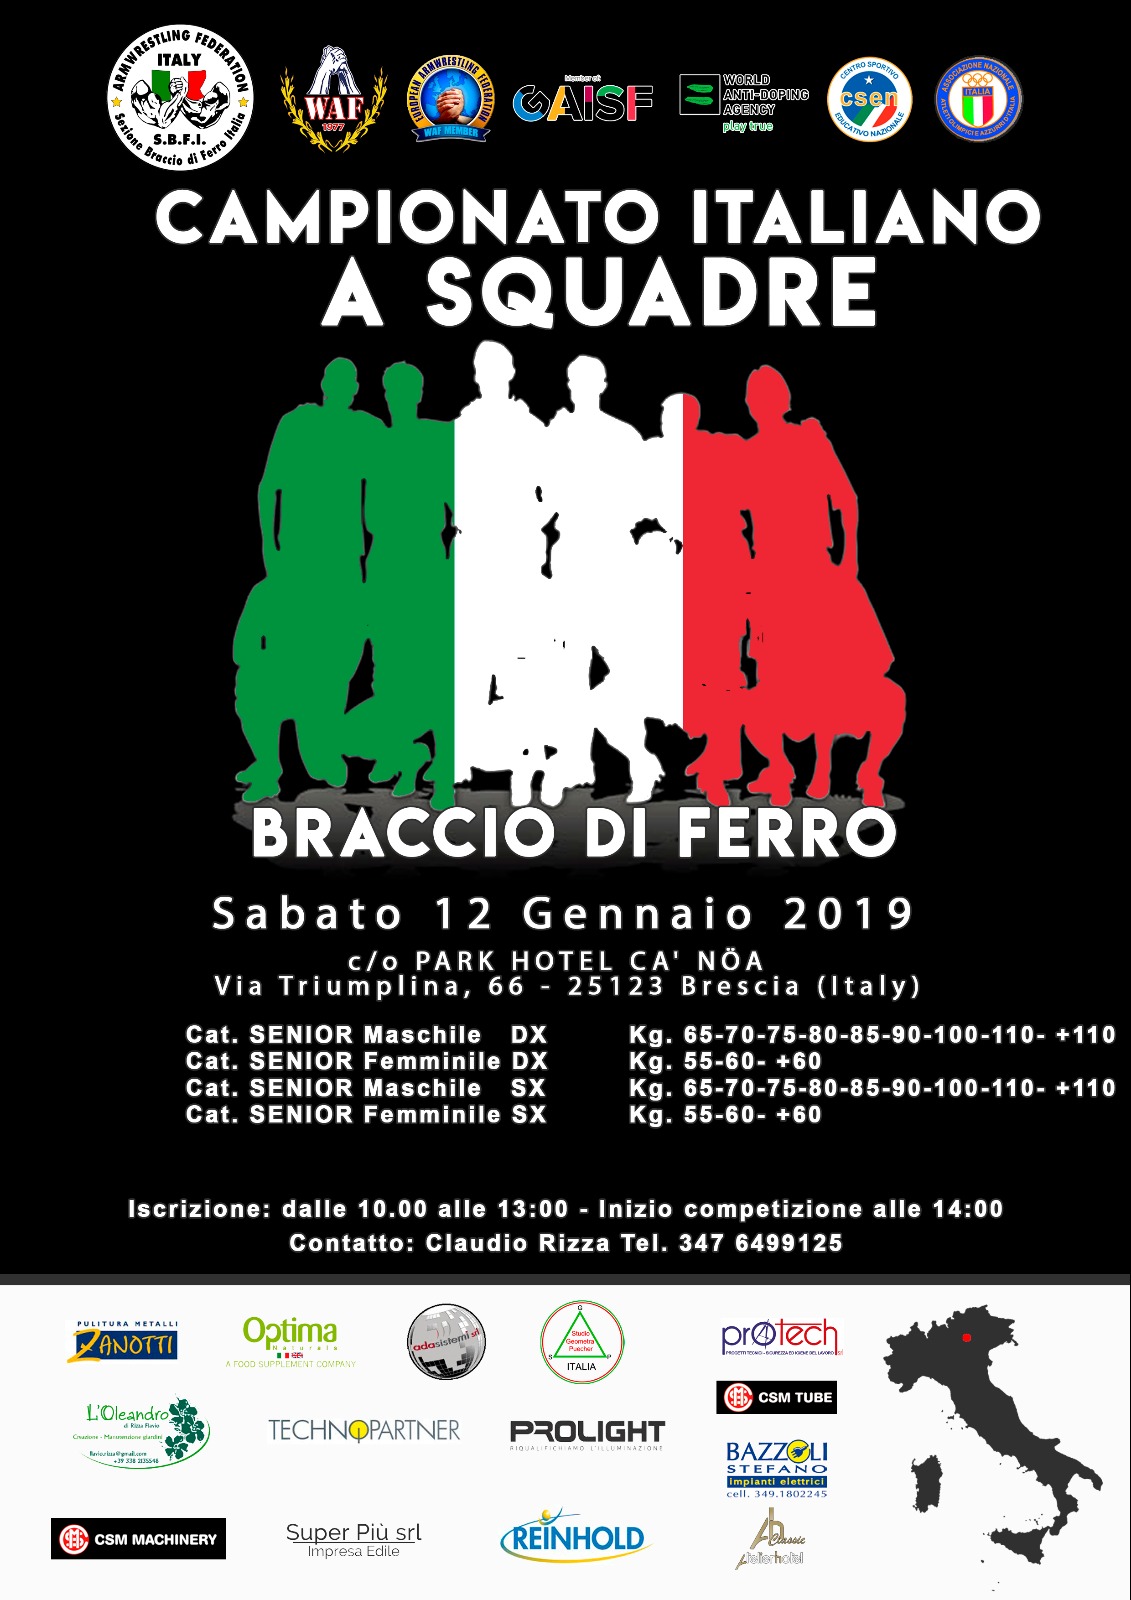 SBFI - Sezione braccio di ferro Italia - Campionato italiano a squadre 2019